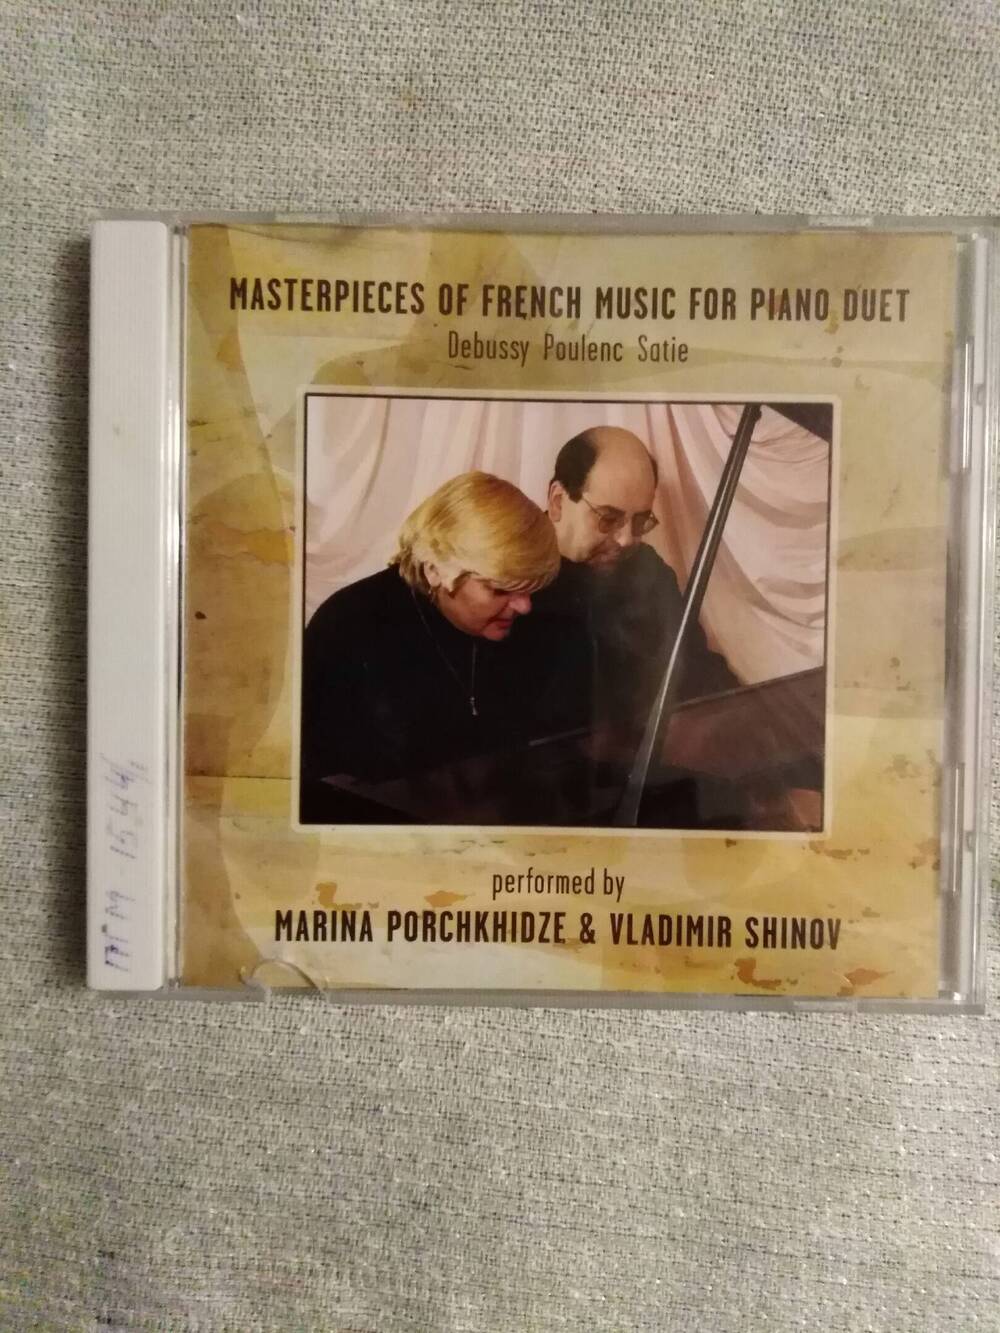 Компакт диск с записью музыки разных авторов в исполнении пианистки Марины Порчхидзе  и композитора Владимира Шинова, в упаковке.